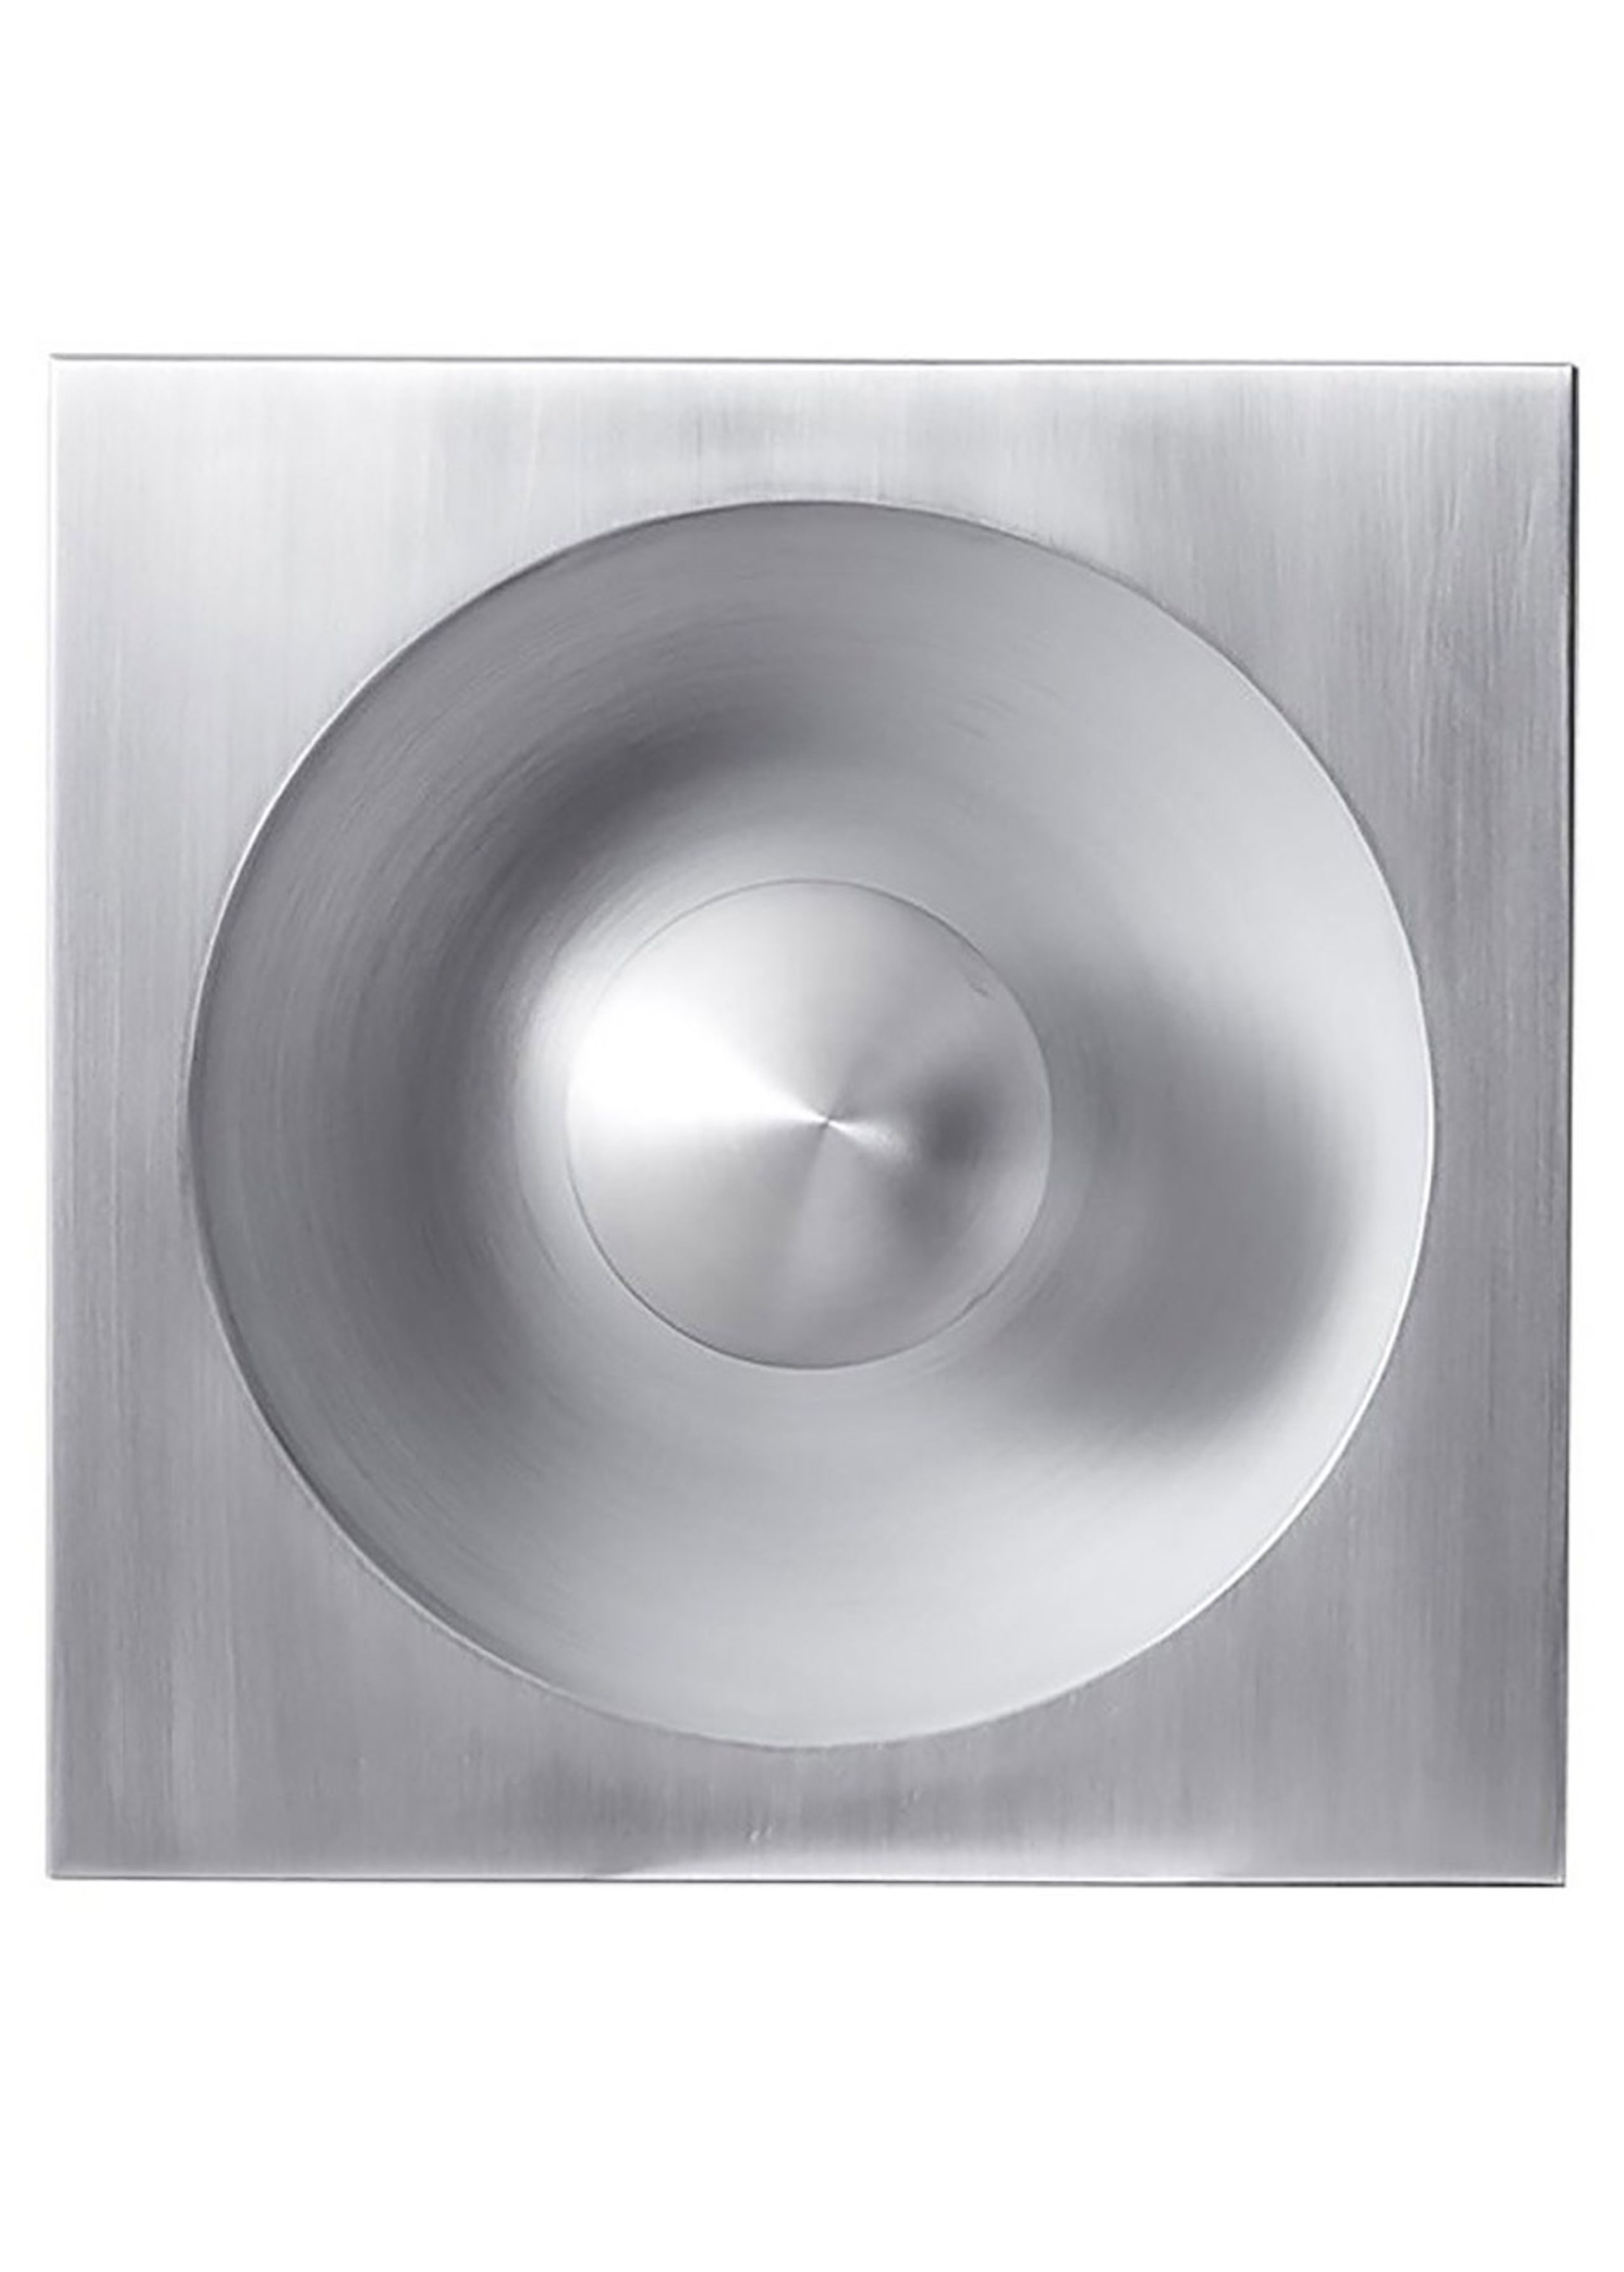 Verpan - Spiegel - Wall & ceiling lamp - Pendant Lamp - Brushed aluminium